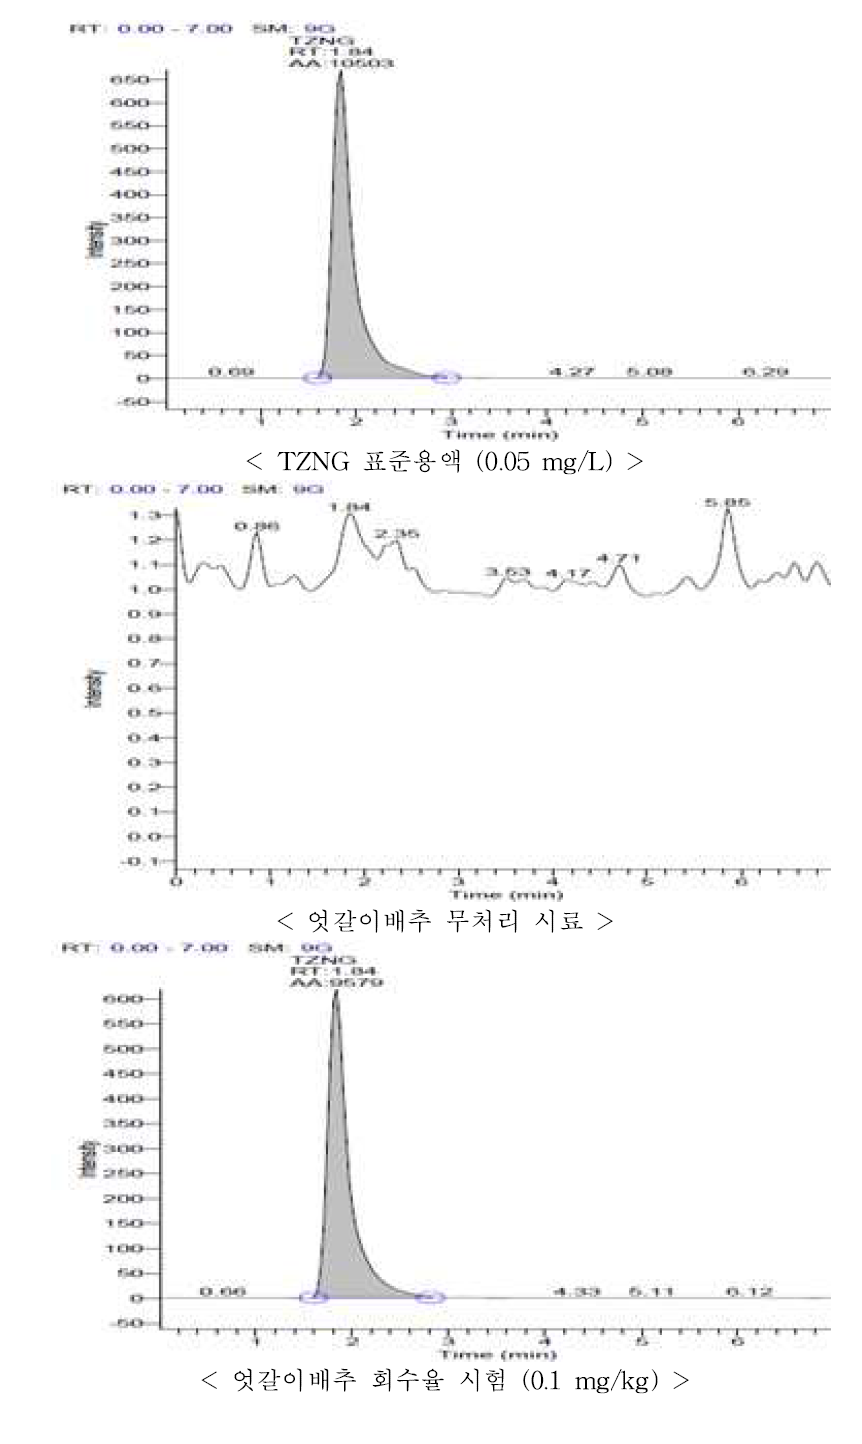 엇갈이배추 중 TZNG의 회수율 크로마토그램